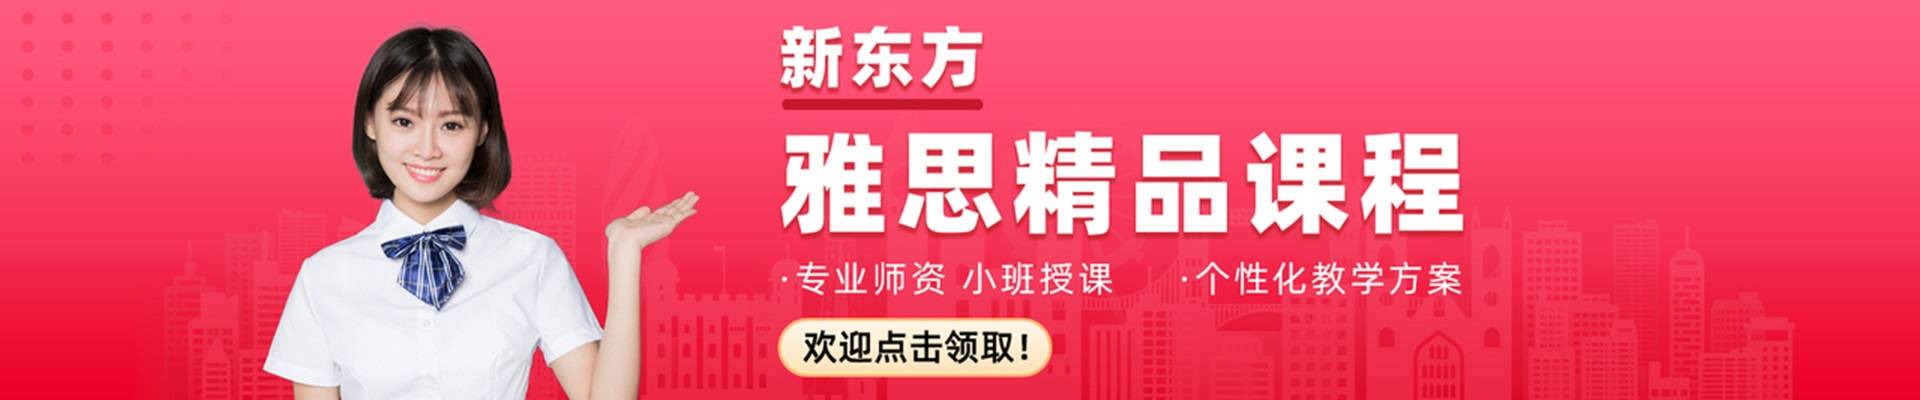 深圳新东方培训中心